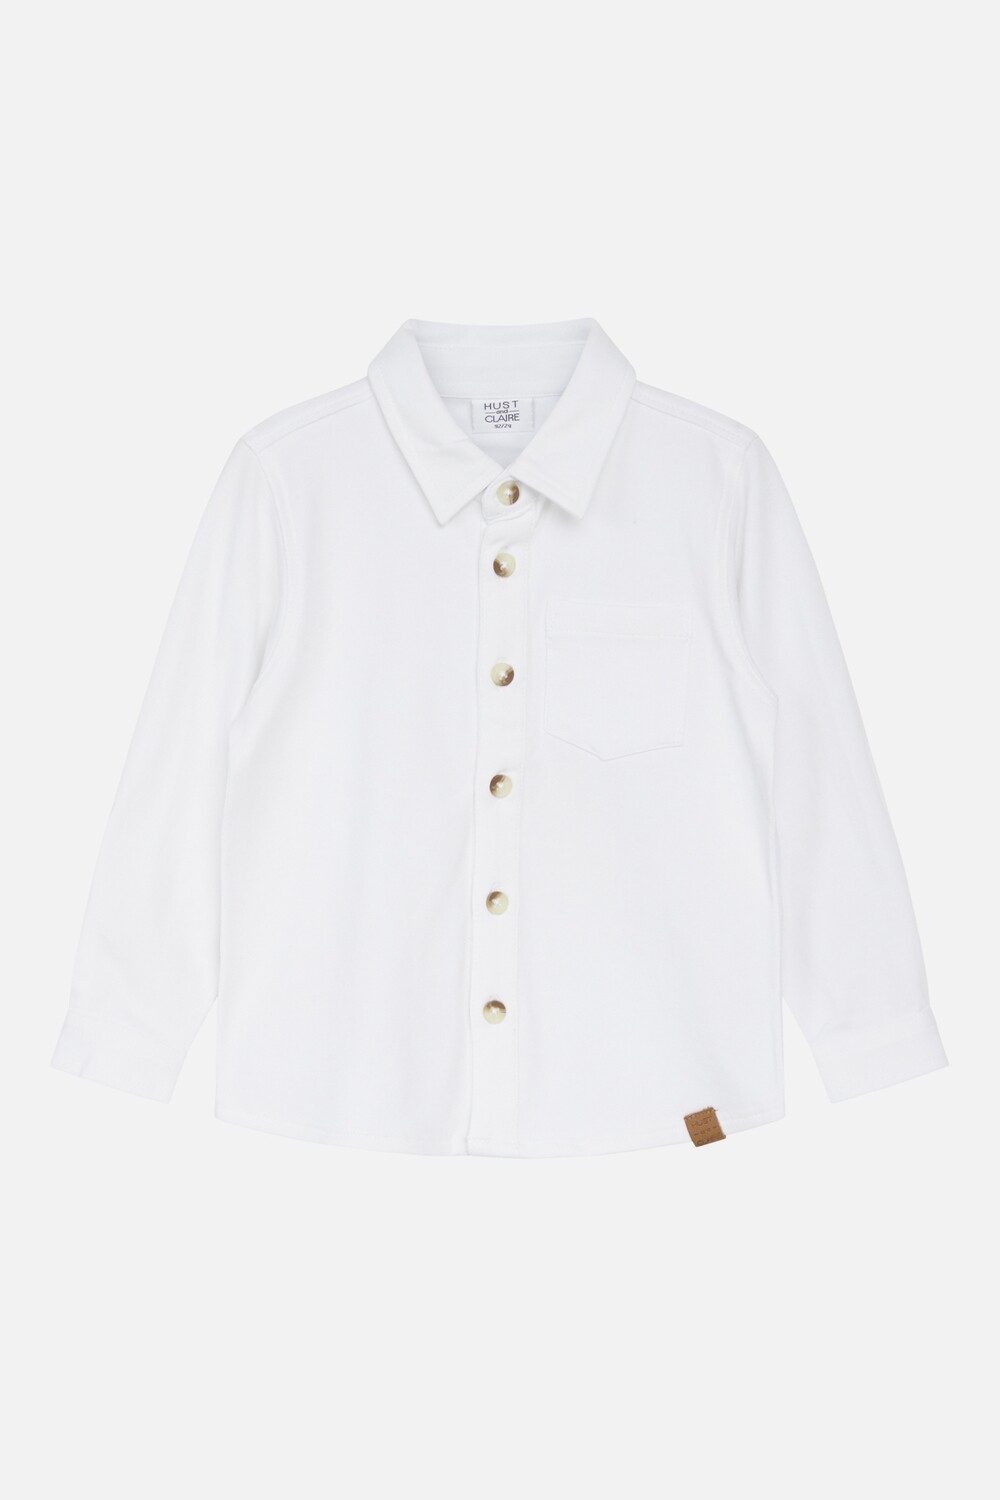 HCRudy - Overhemd ! Witte knoopjes ipv wit met bruin zoals foto!, Maat: 86